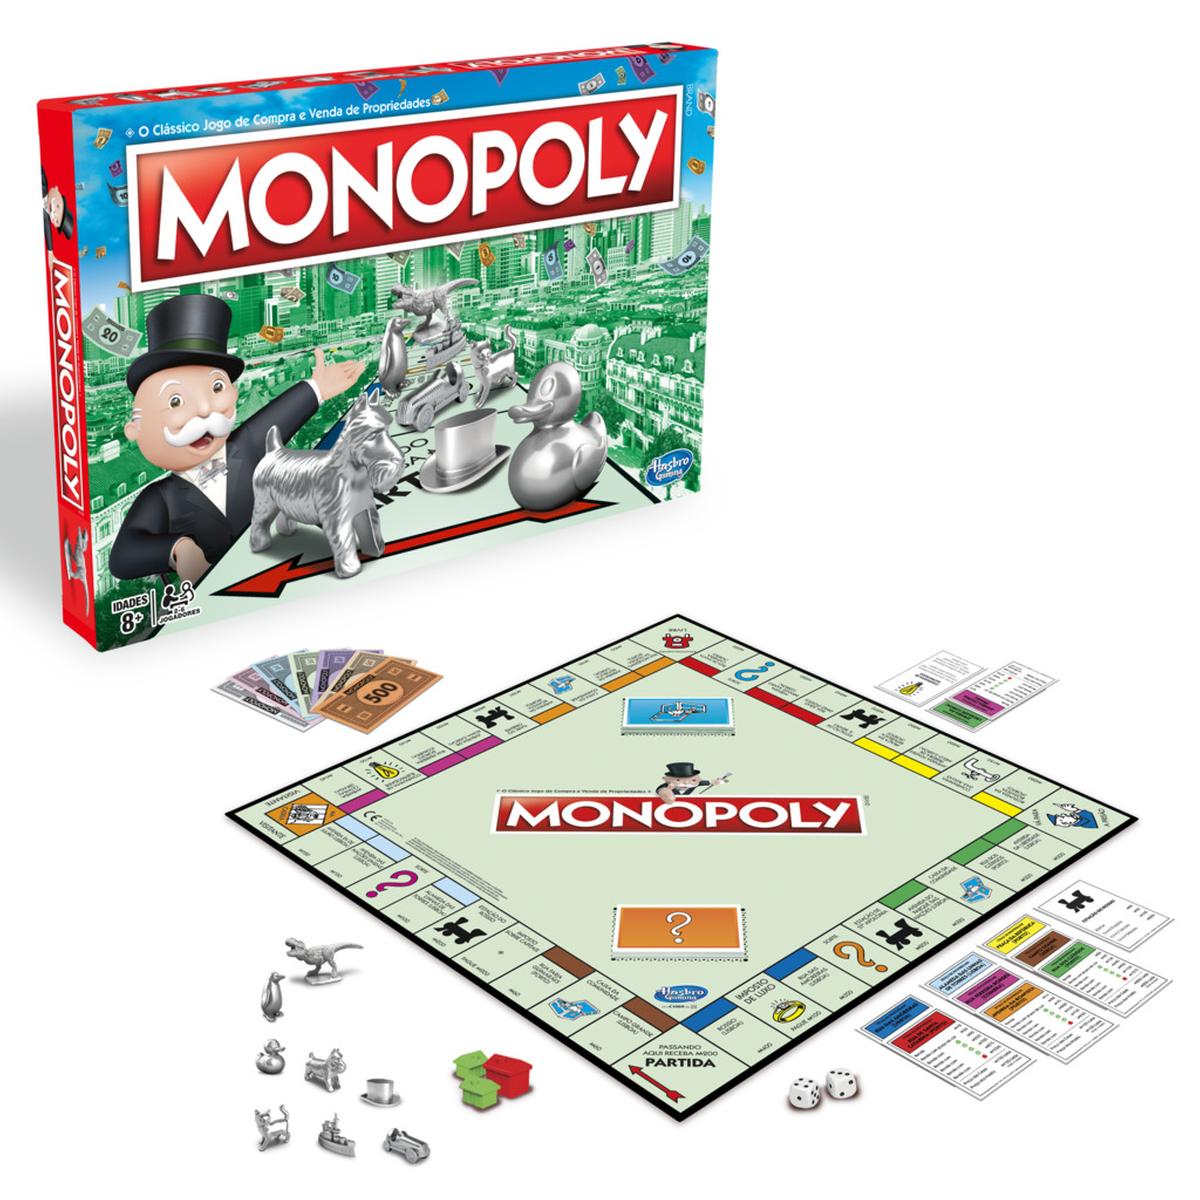 Monopoly | Jogos Português | Loja de brinquedos e videojogos Online Toysrus